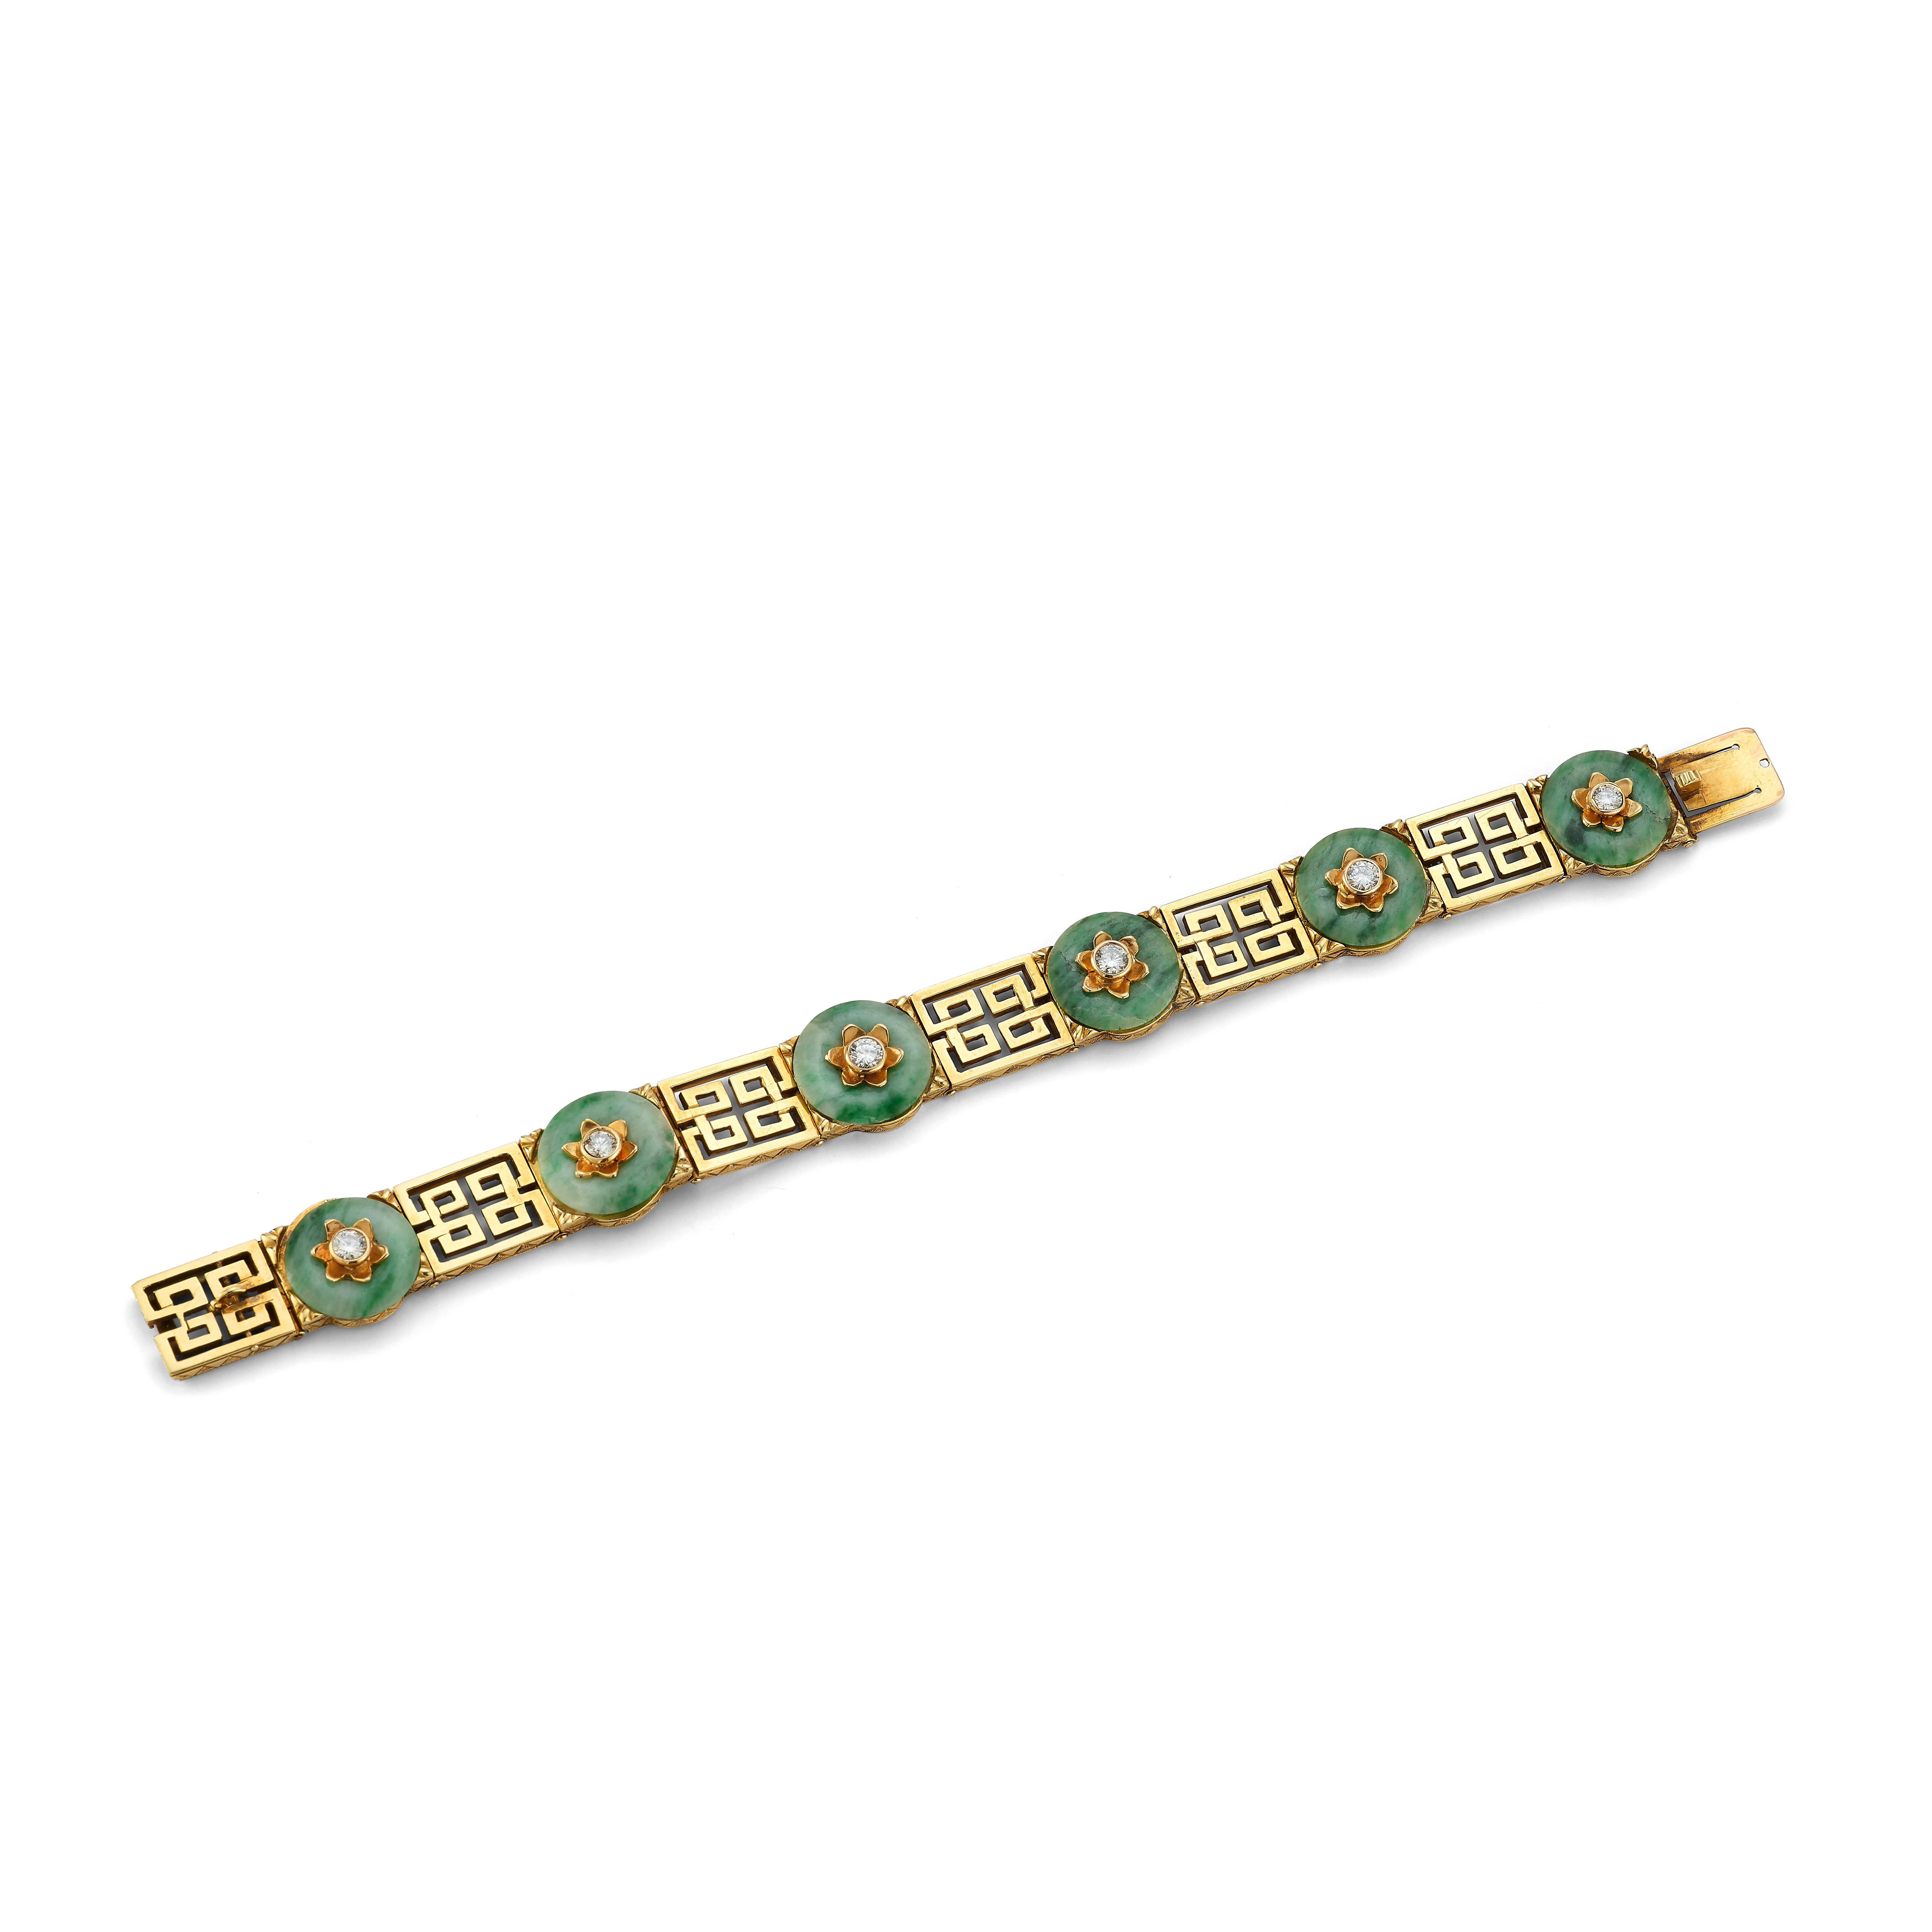 Tiffany & Co Jade & Diamant Gold Armband.

Ein Armband, bestehend aus 6 Jadescheiben mit 6 diamantenen und goldenen Blumenmotiven auf der Oberseite jeder Jade. Jede Jade ist an einem goldenen Glied mit geometrischem Muster befestigt. 

Abmessungen: